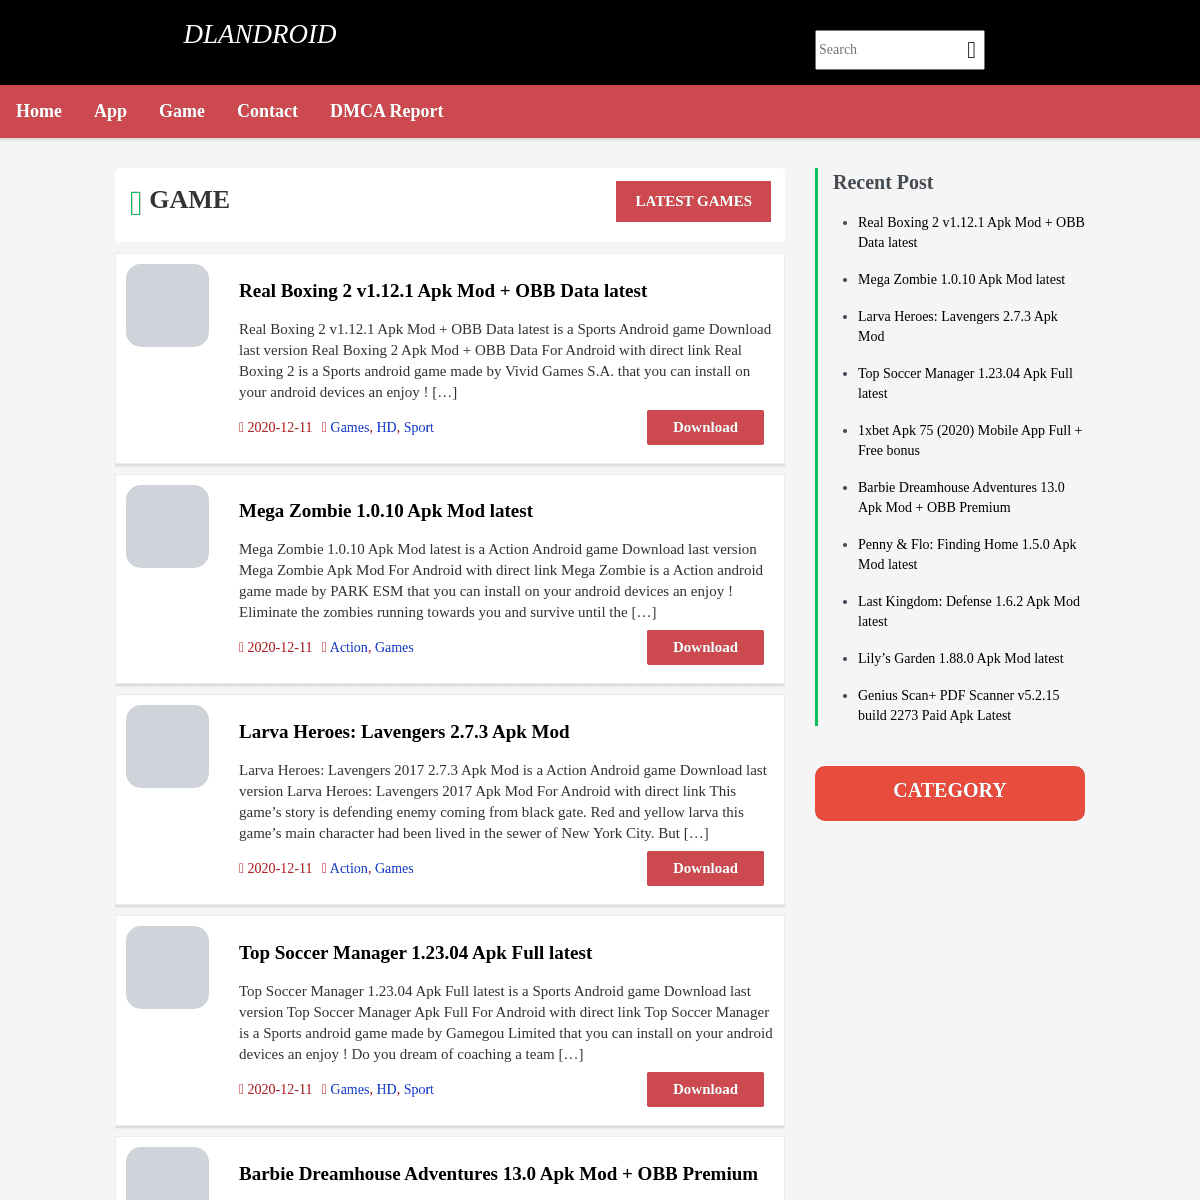 A complete backup of dlandroid.com